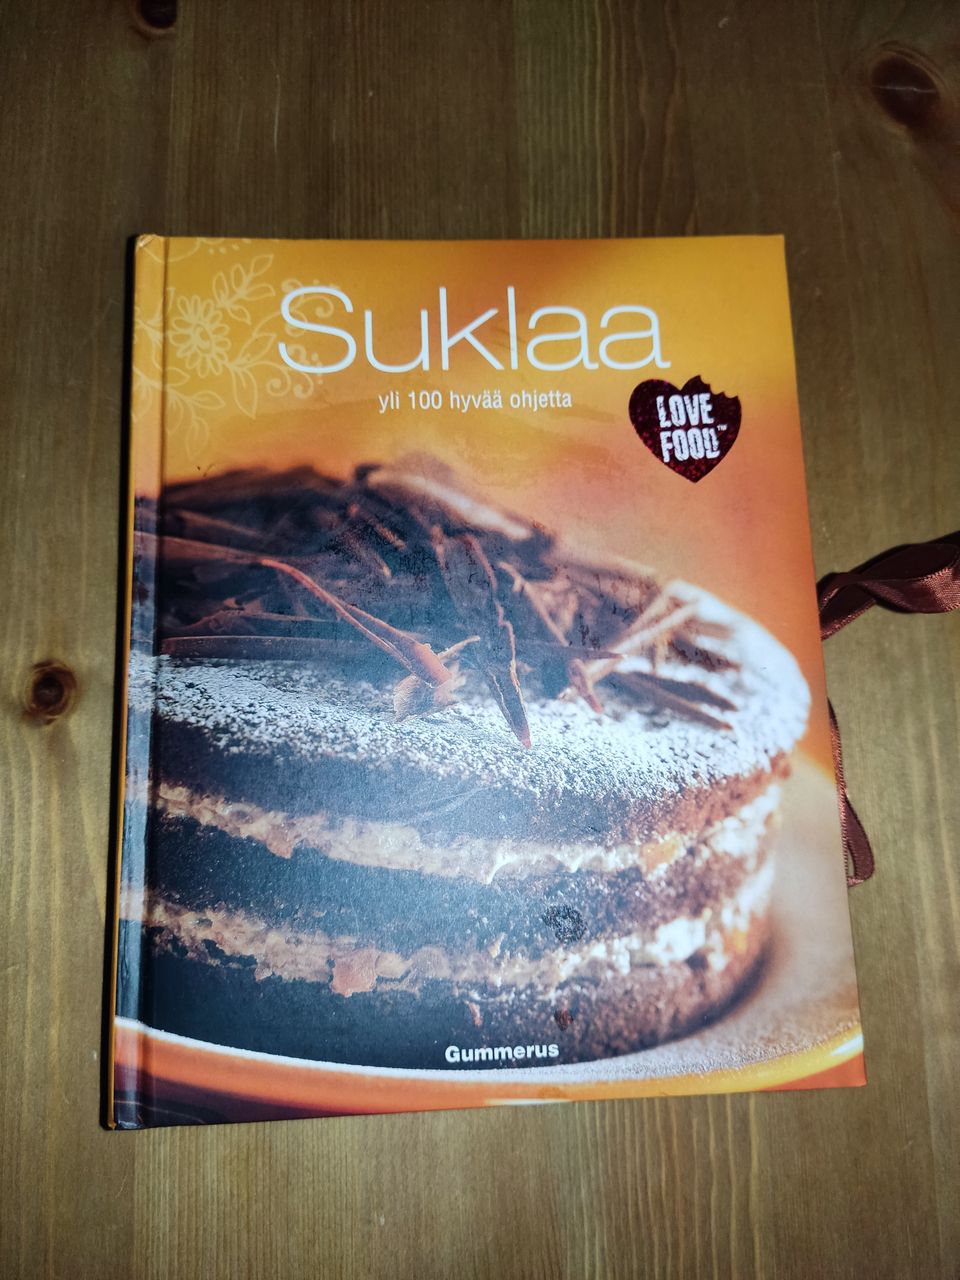 Suklaa cookbook